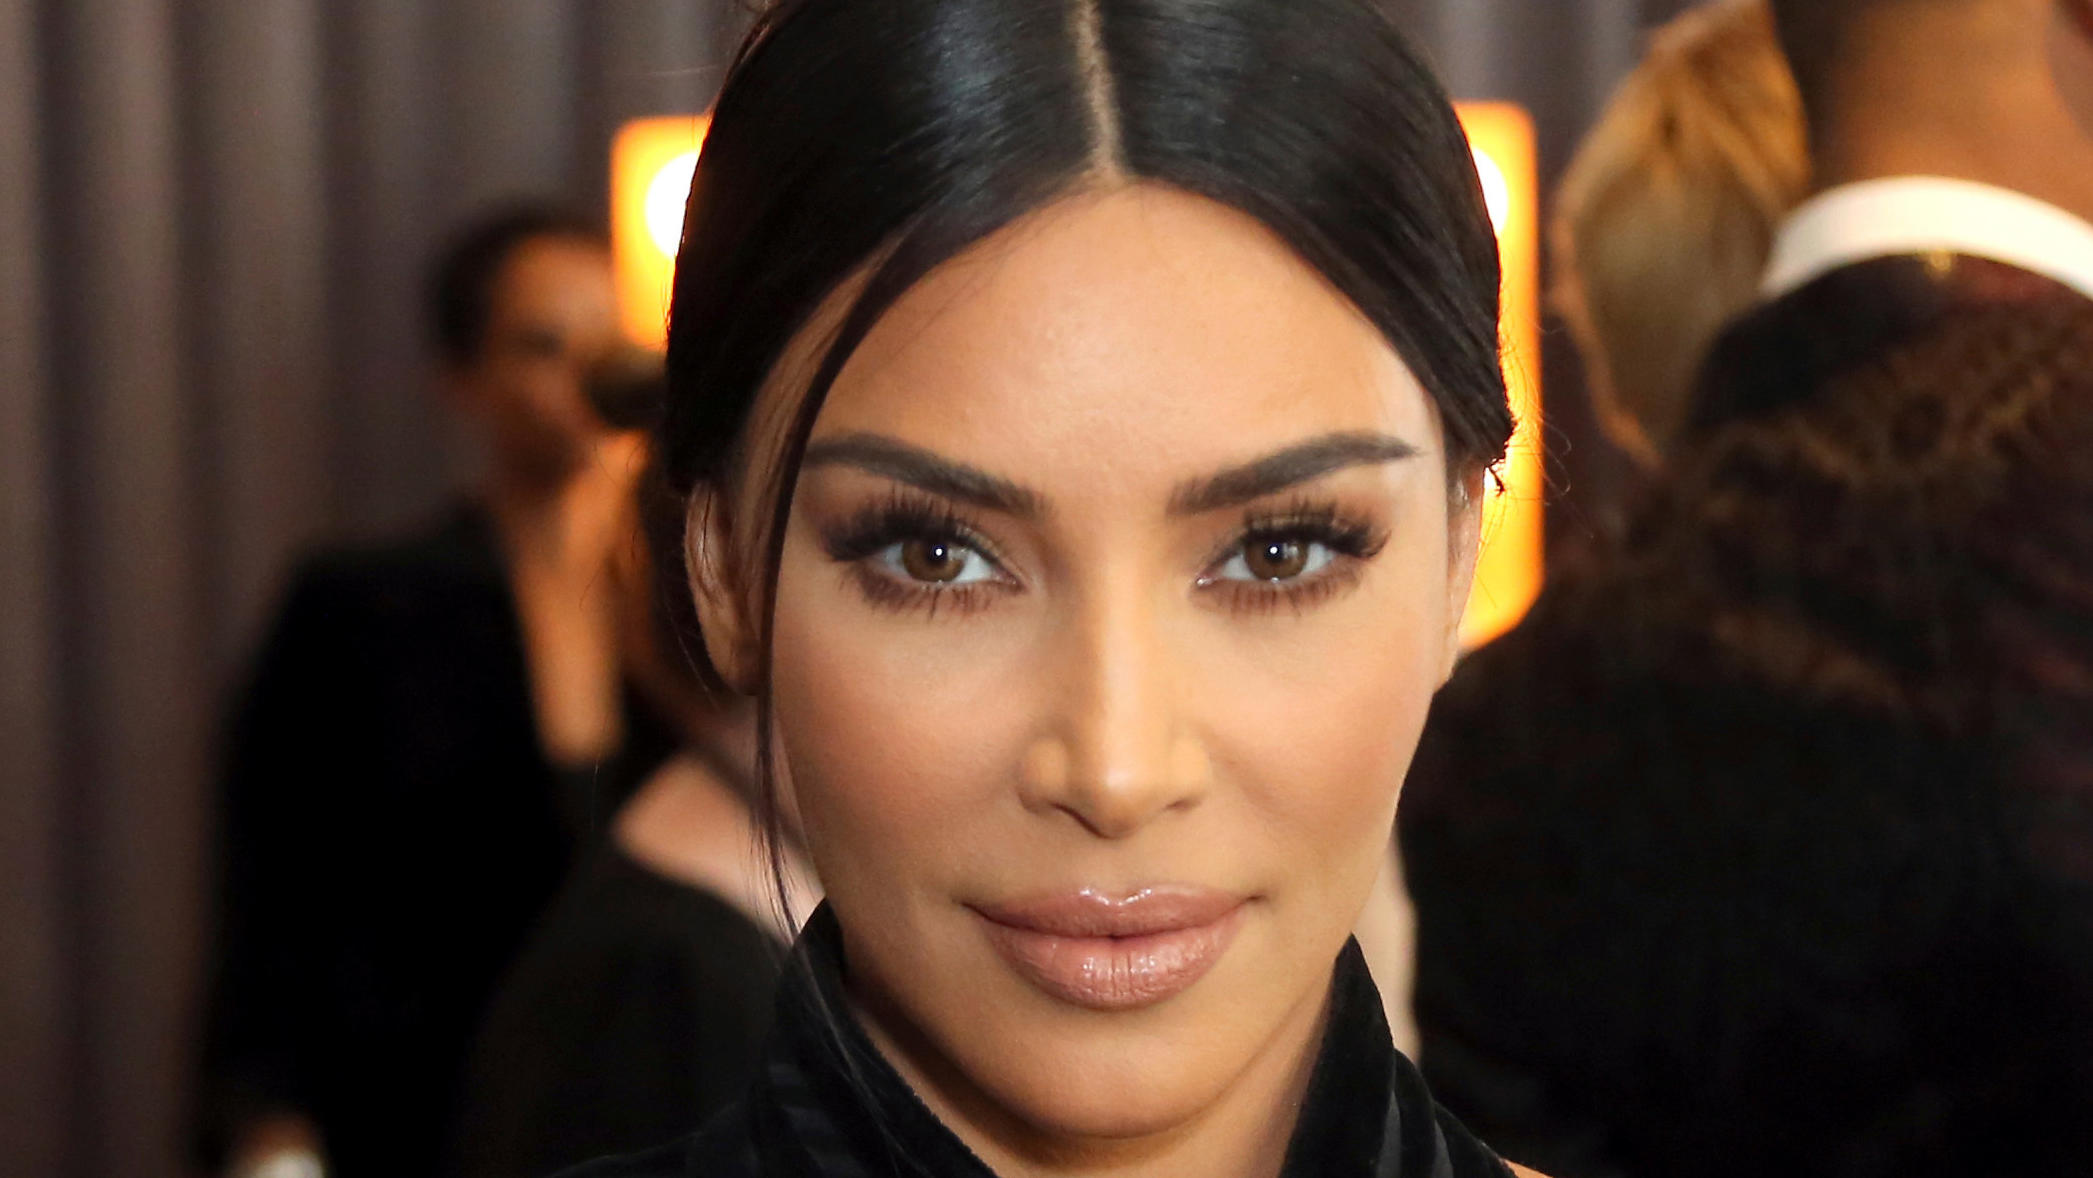 ARCHIV - 14.09.2019, USA, Los Angeles: Kim Kardashian, US-amerikanische Schauspielerin, nimmt an den Creative Arts Emmy Awards im Microsoft Theater teil. (zu dpa: "Kampf gegen Falschnachrichten: Kardashian geht in Instagram-Streik") (Wiederholung mit